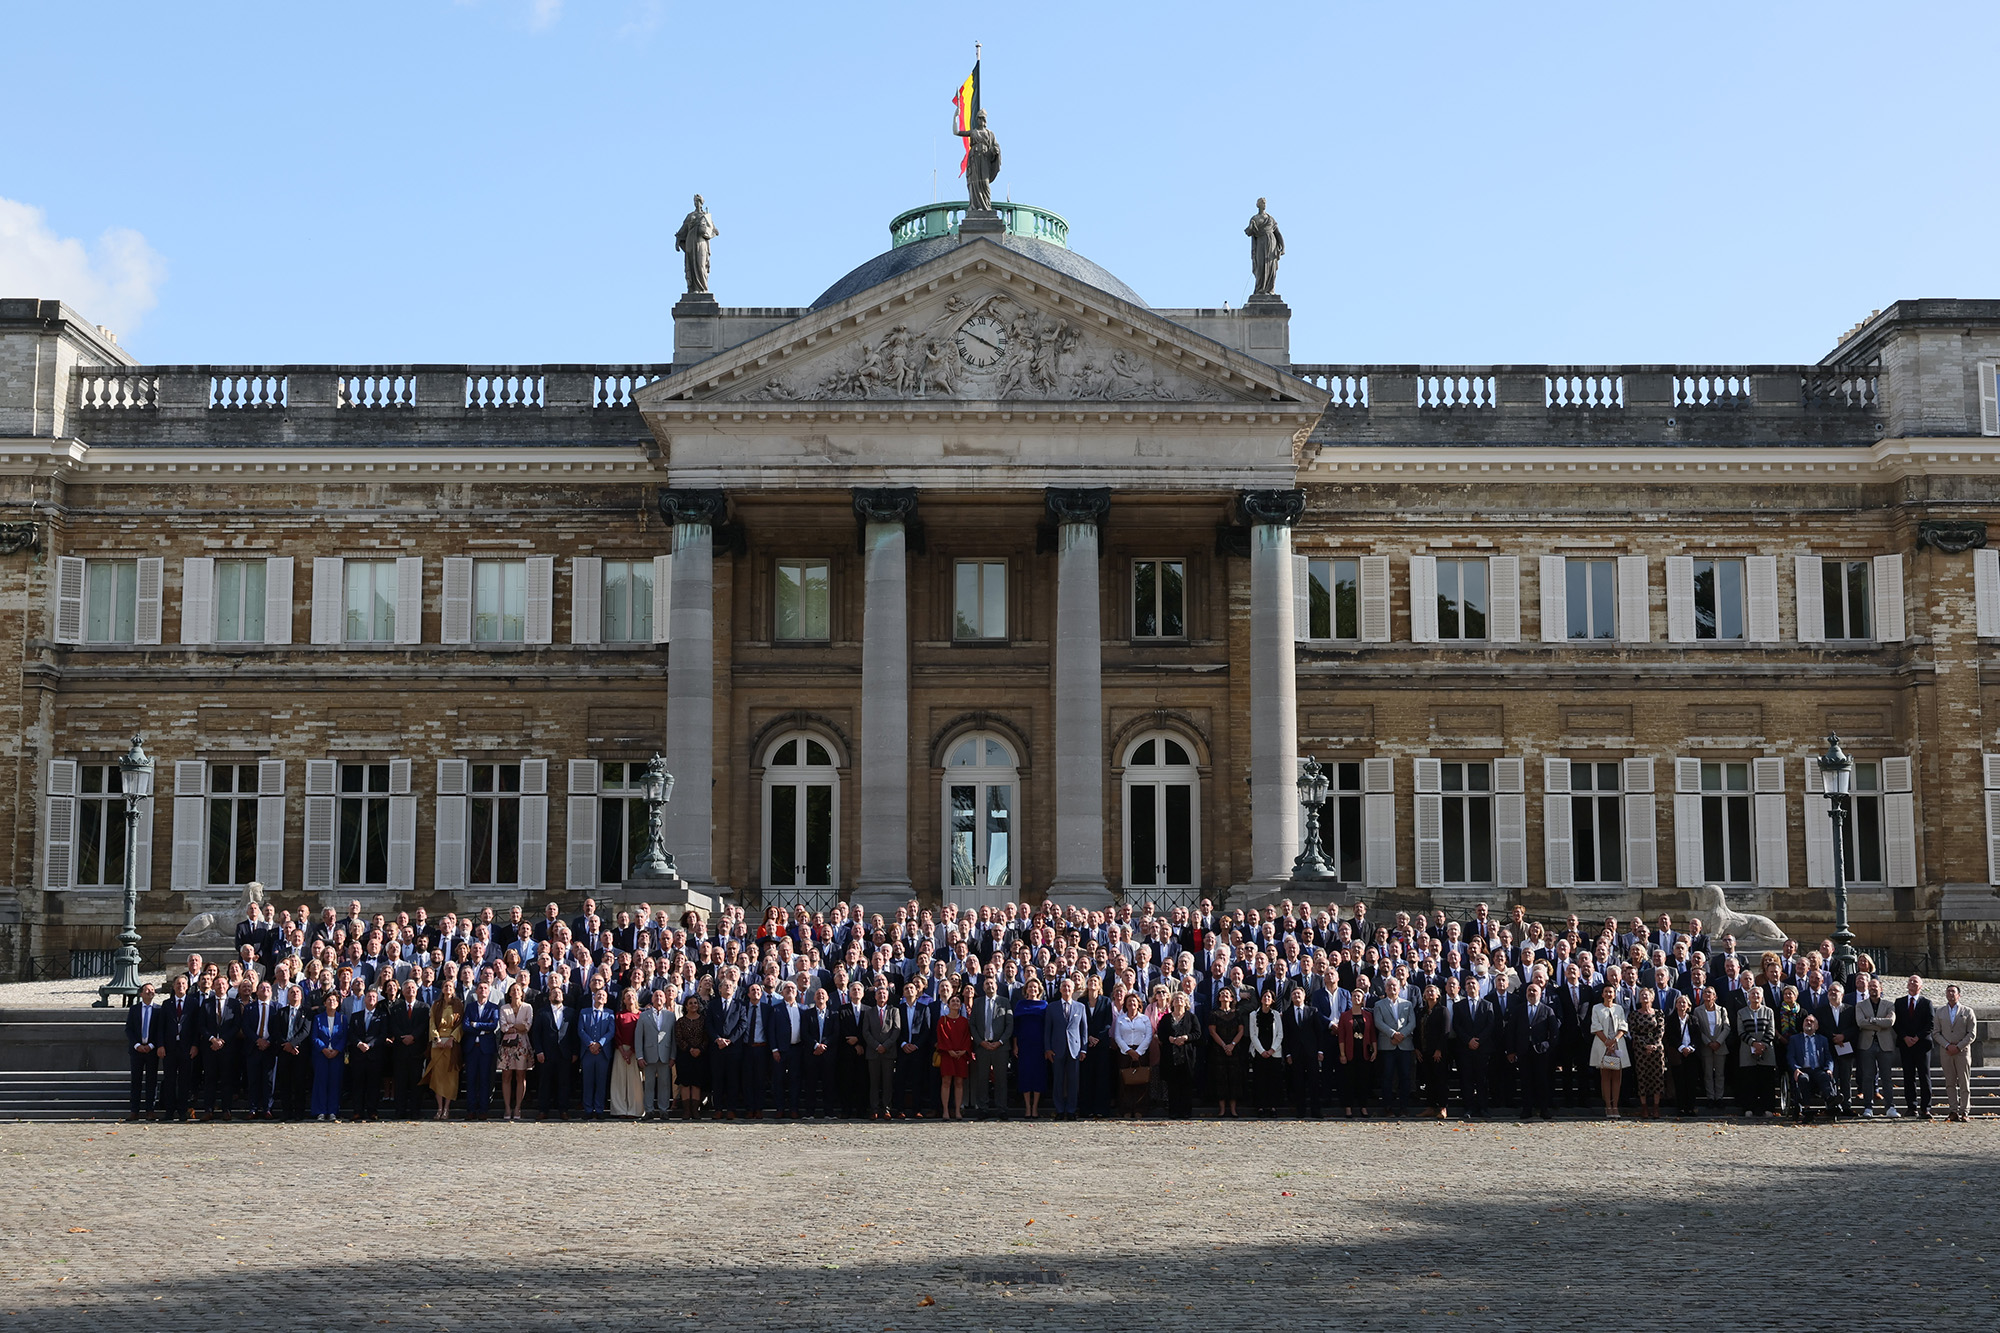 Das Königspaar mit den Bürgermeistern am Dienstag vor Schloss Laeken (Bild: Benoit Doppagne/Belga)